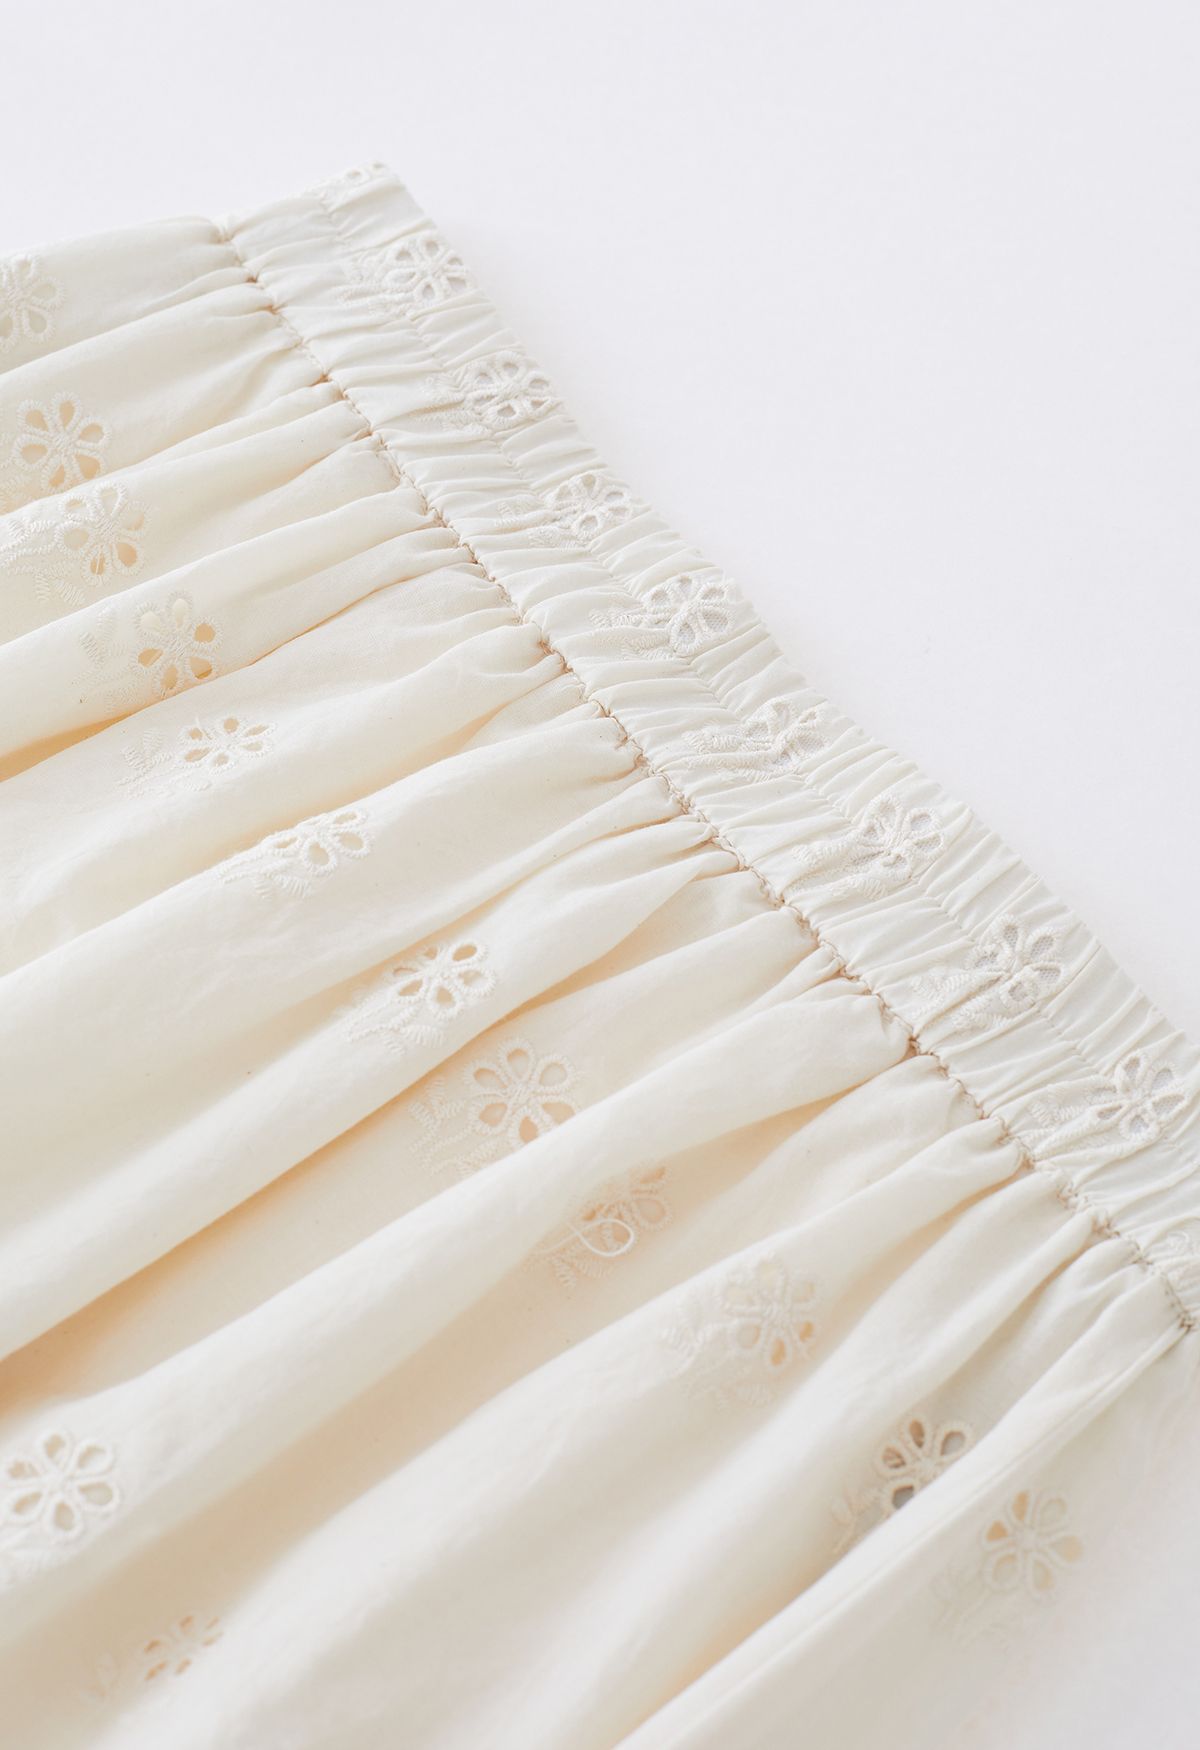 Falda larga con abertura lateral y ojales bordados en color crema